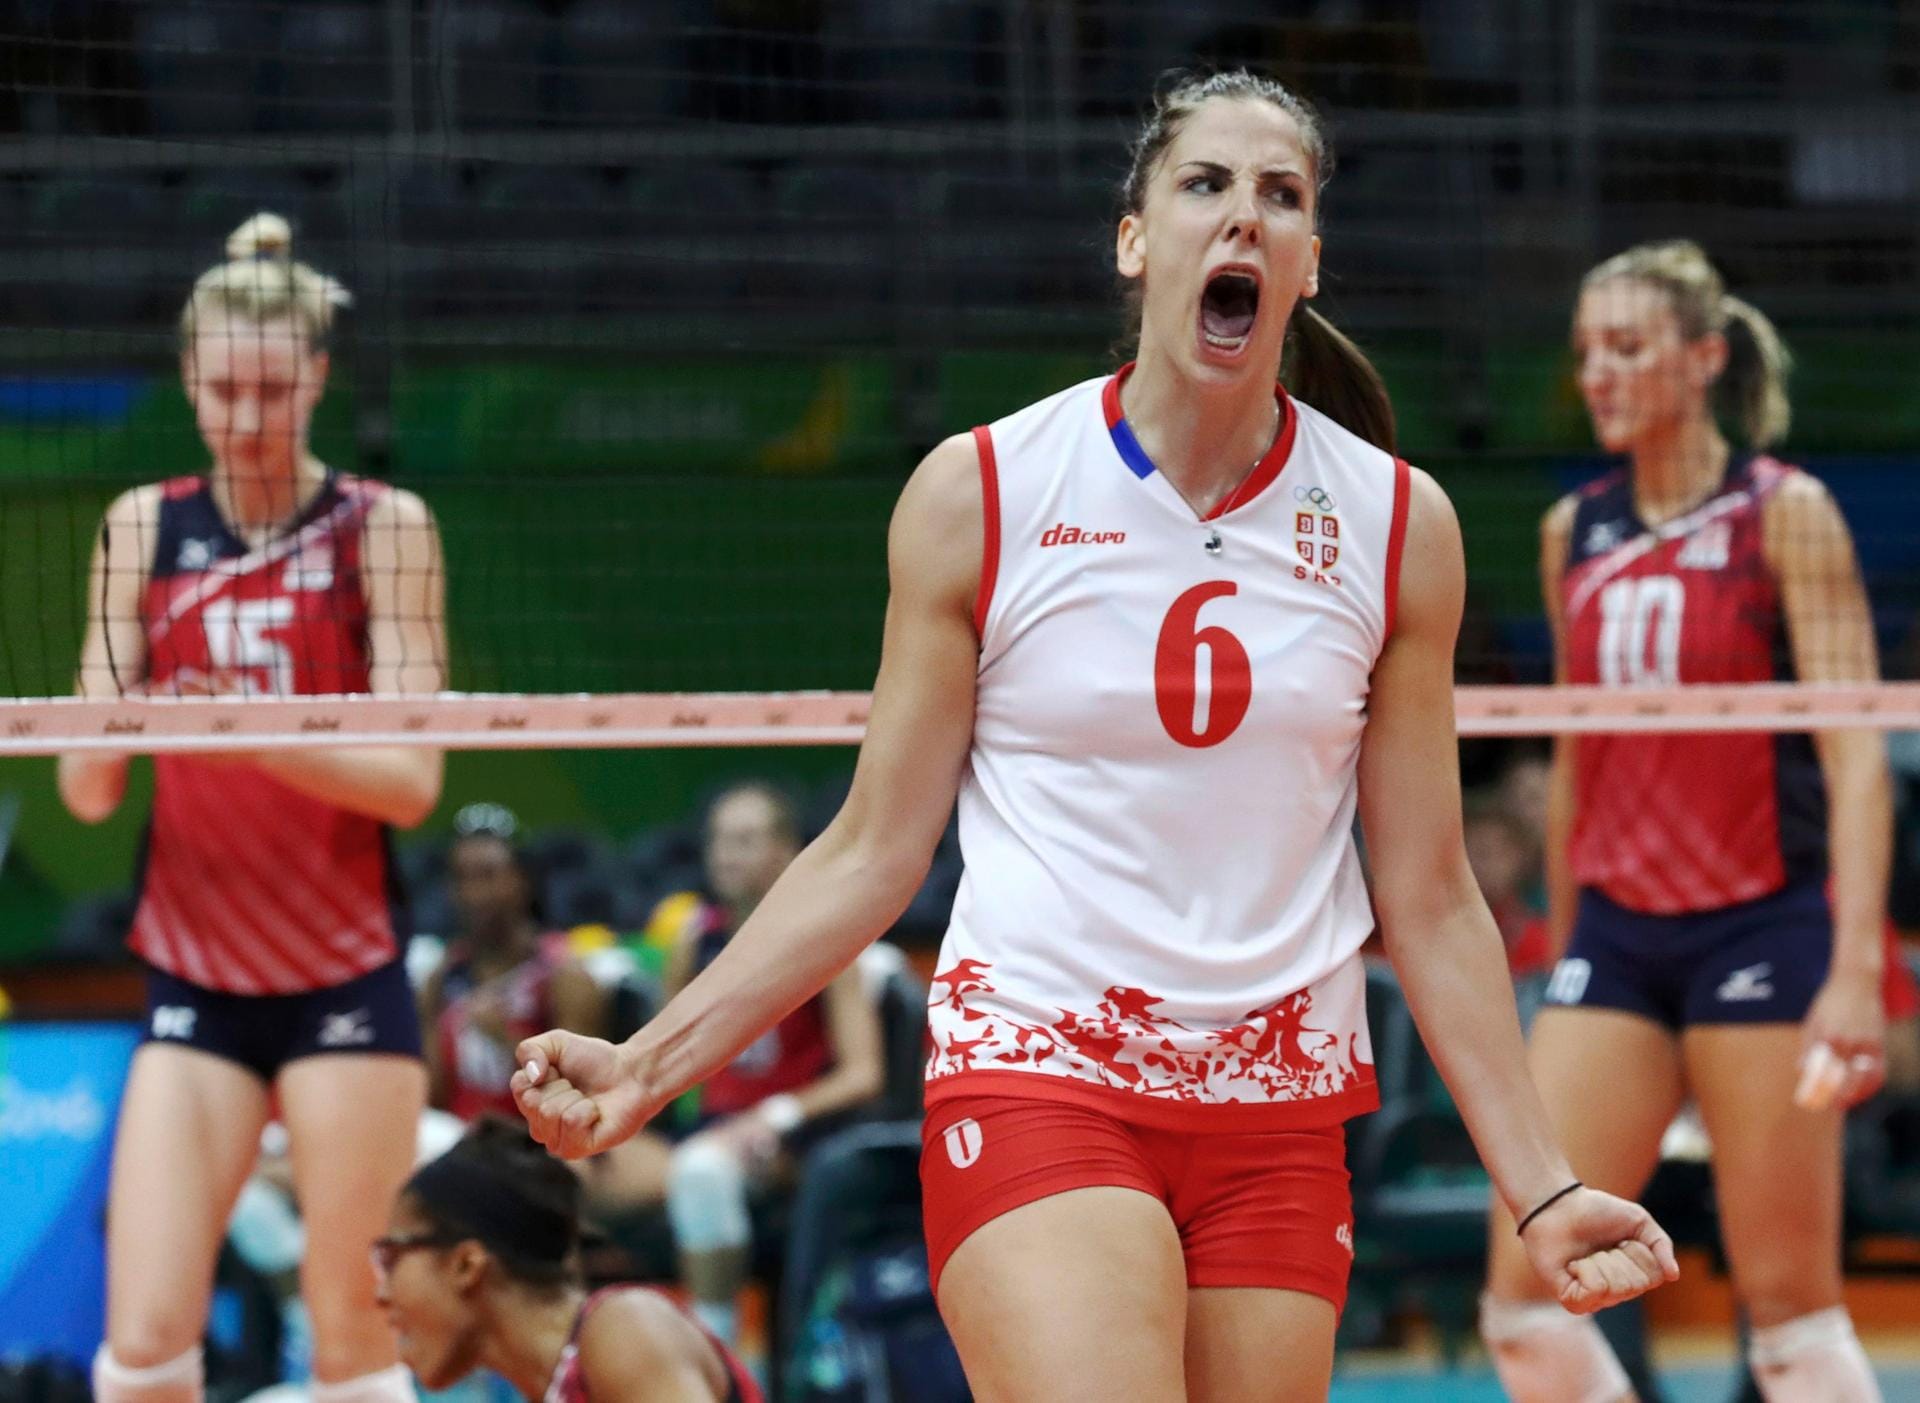 Die Freude muss raus: Volleyballerin Tijana Malesevic aus Serbien. Ihr Team gewann im Finale gegen die USA.